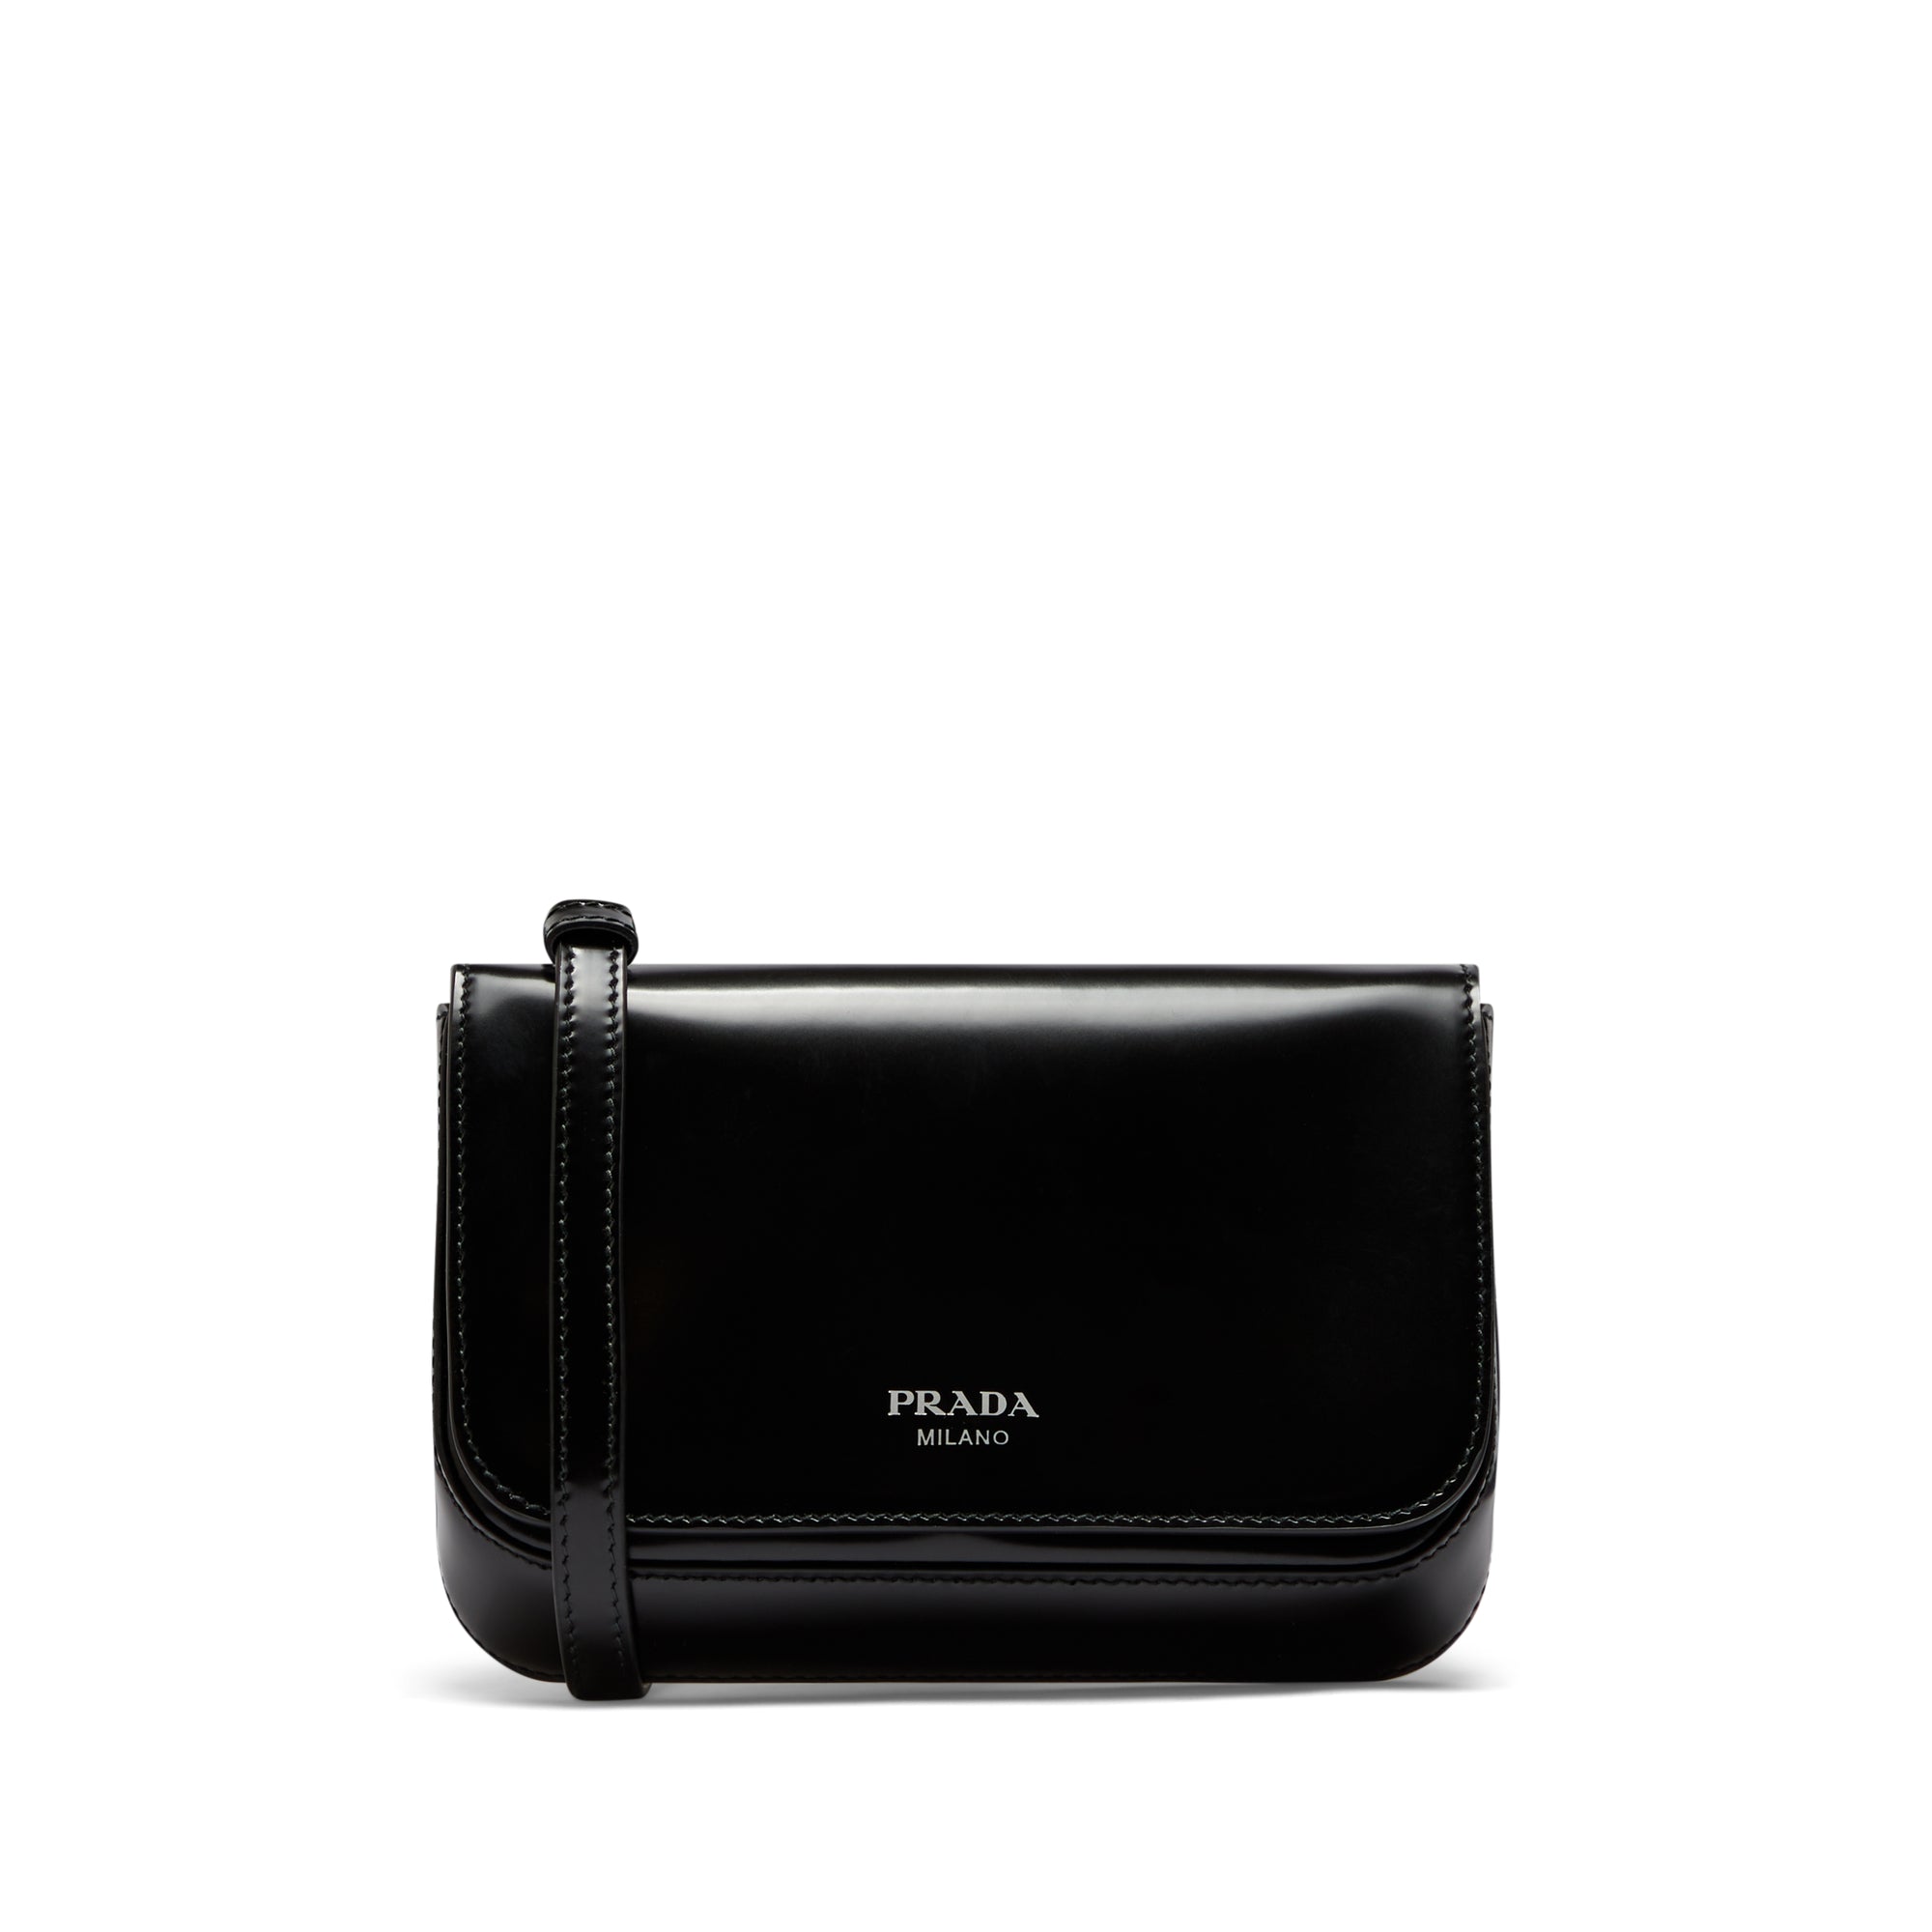 Prada - Men’s Brushed Leather Mini Bag - (Black) view 4